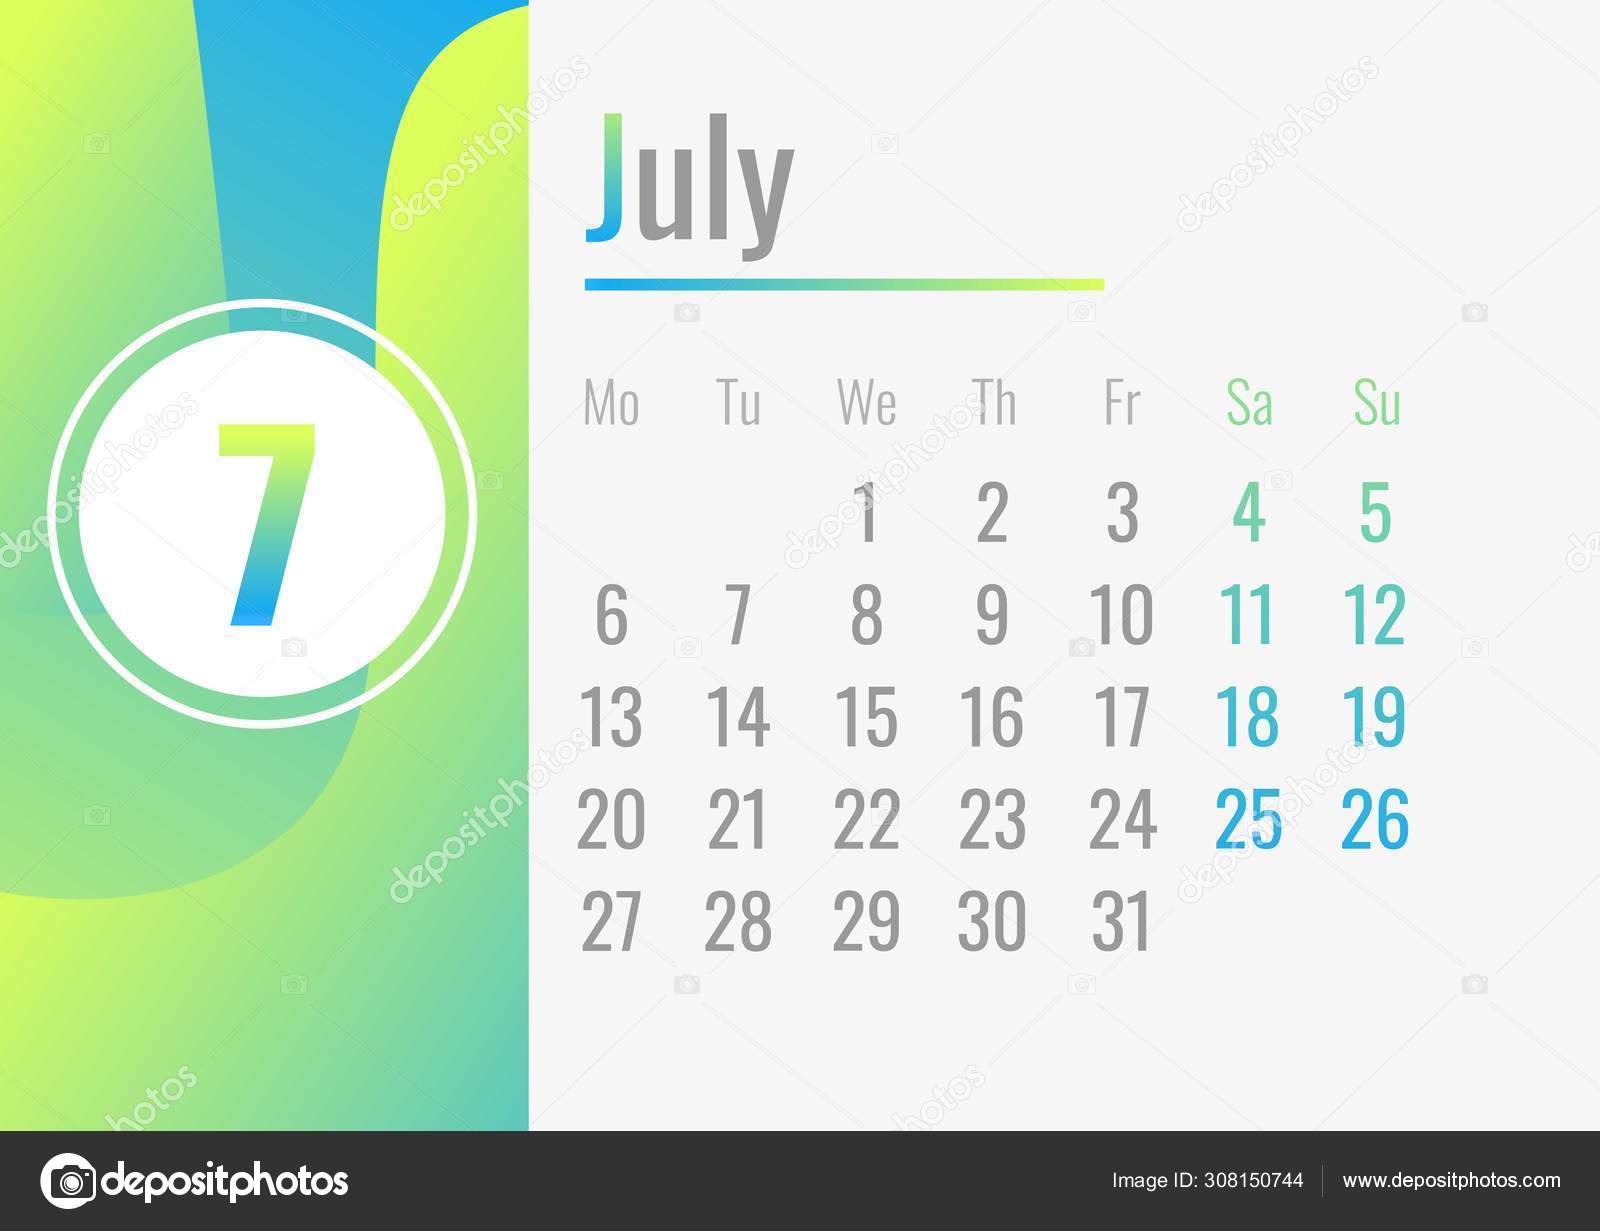 7月カレンダー2020コンセプトバナー 漫画風 ストックベクター